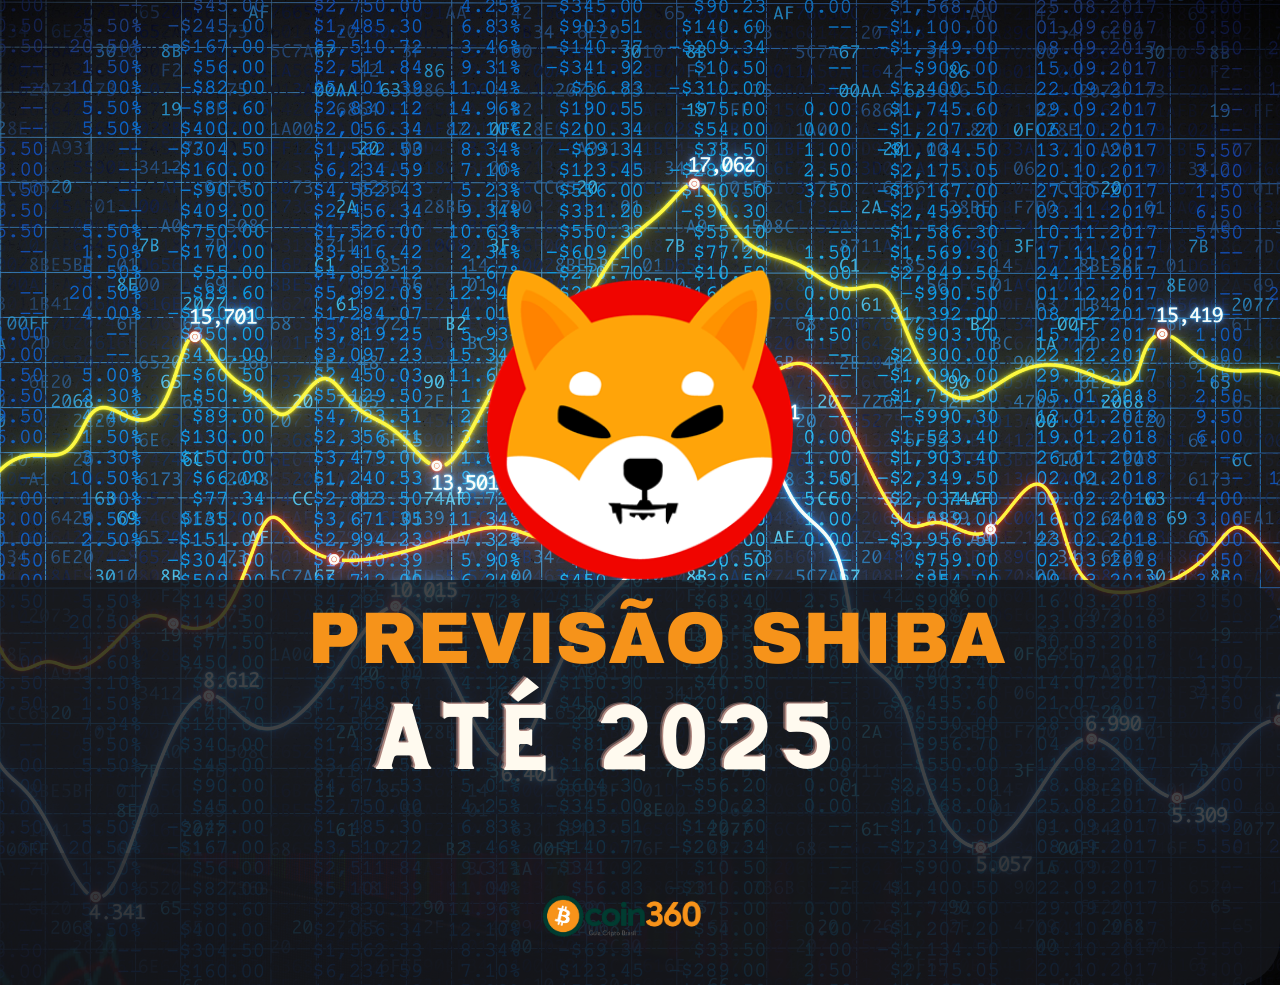 Previsão sHIBA até 2025